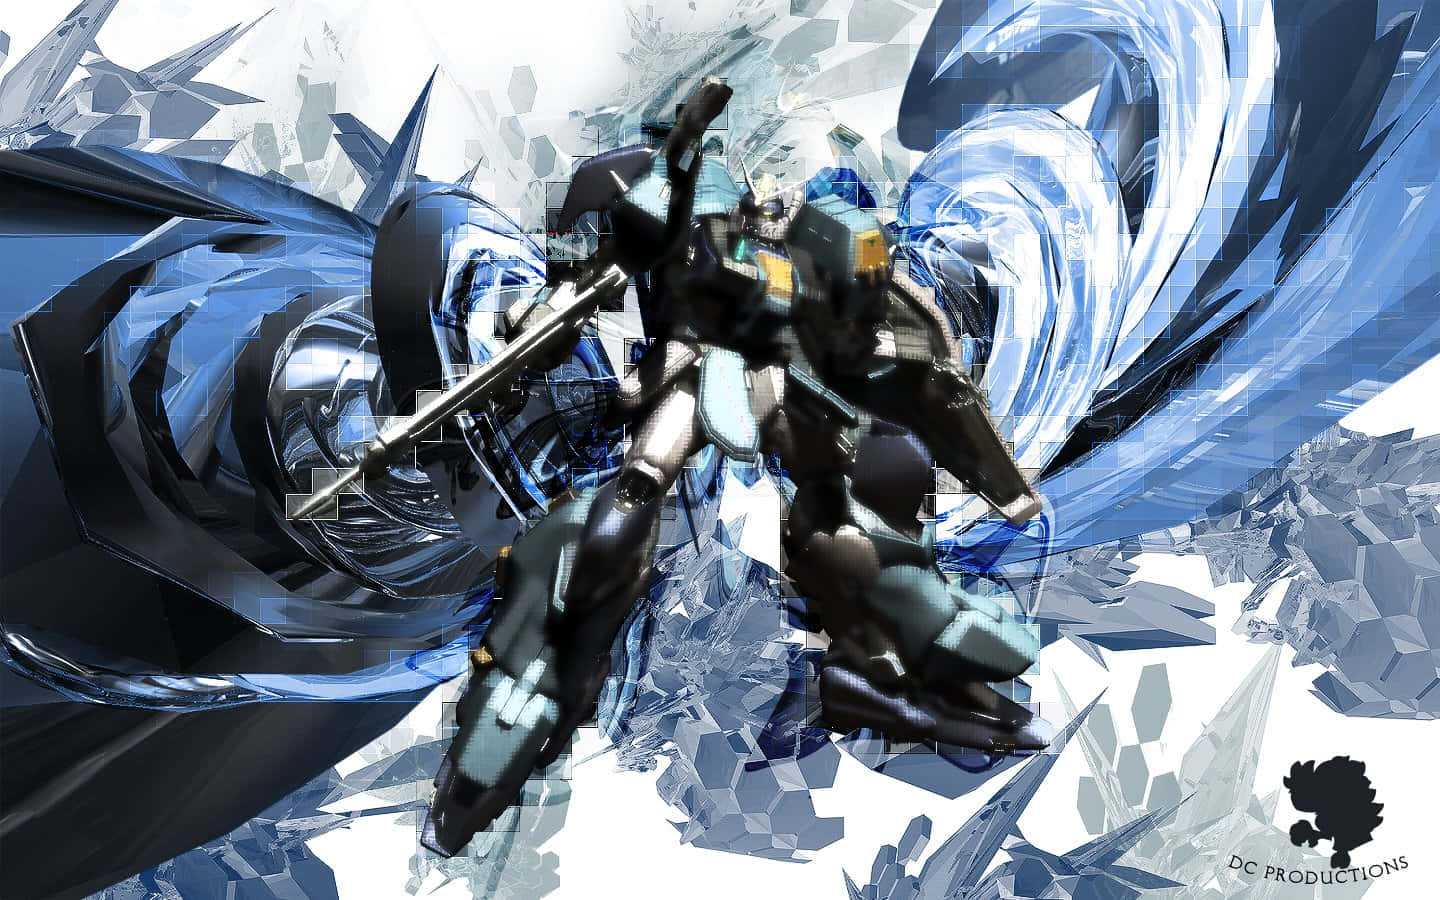 Gundam Mecha - et kraftigt symbol på menneskets modstandsdygtighed Wallpaper